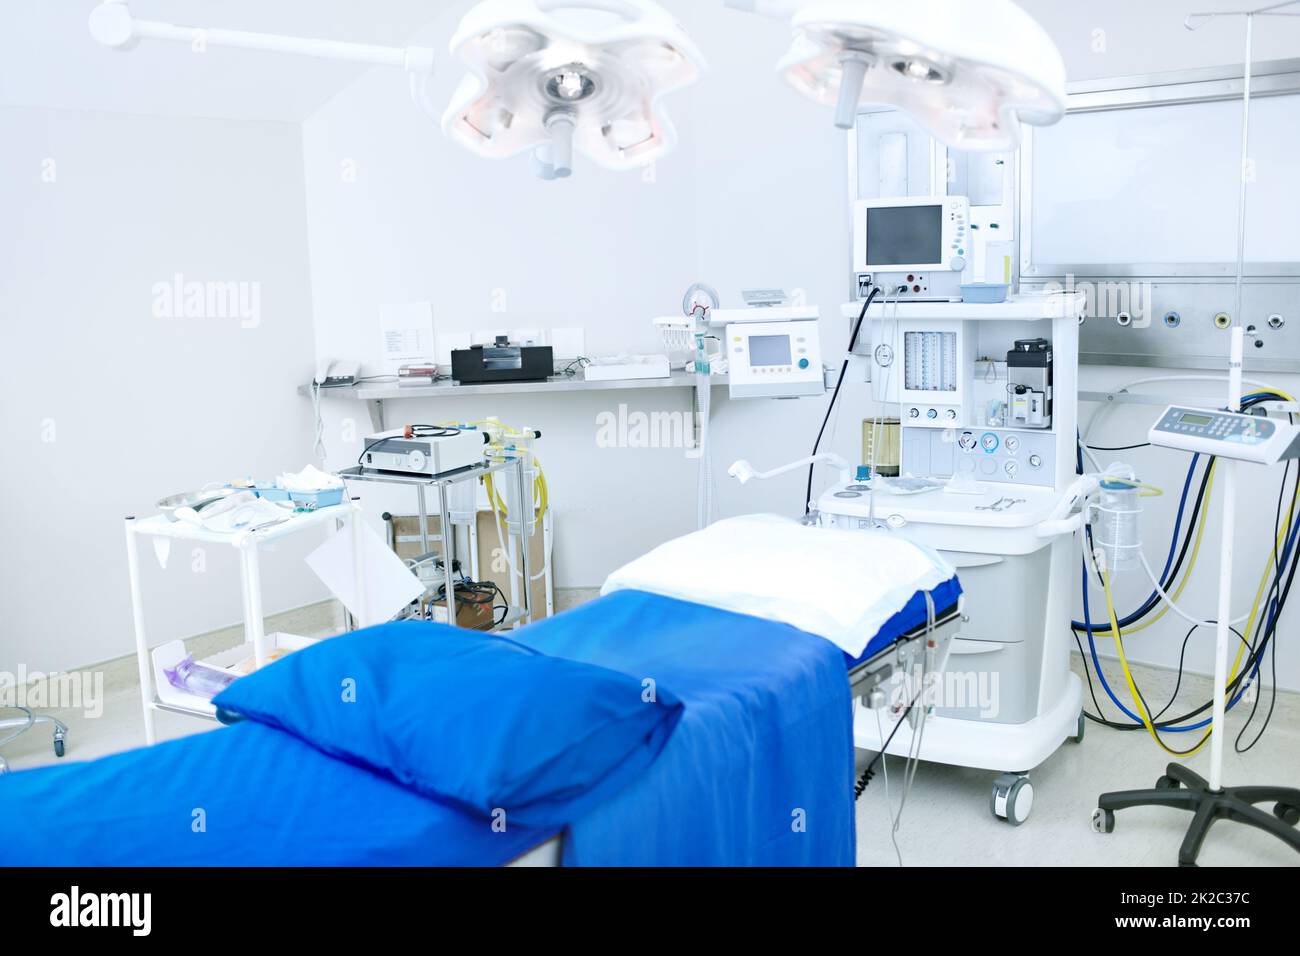 Dieser Operationssaal verfügt über die neueste Technologie. Ein Operationssaal, der mit allen notwendigen medizinischen Geräten ausgestattet ist. Stockfoto